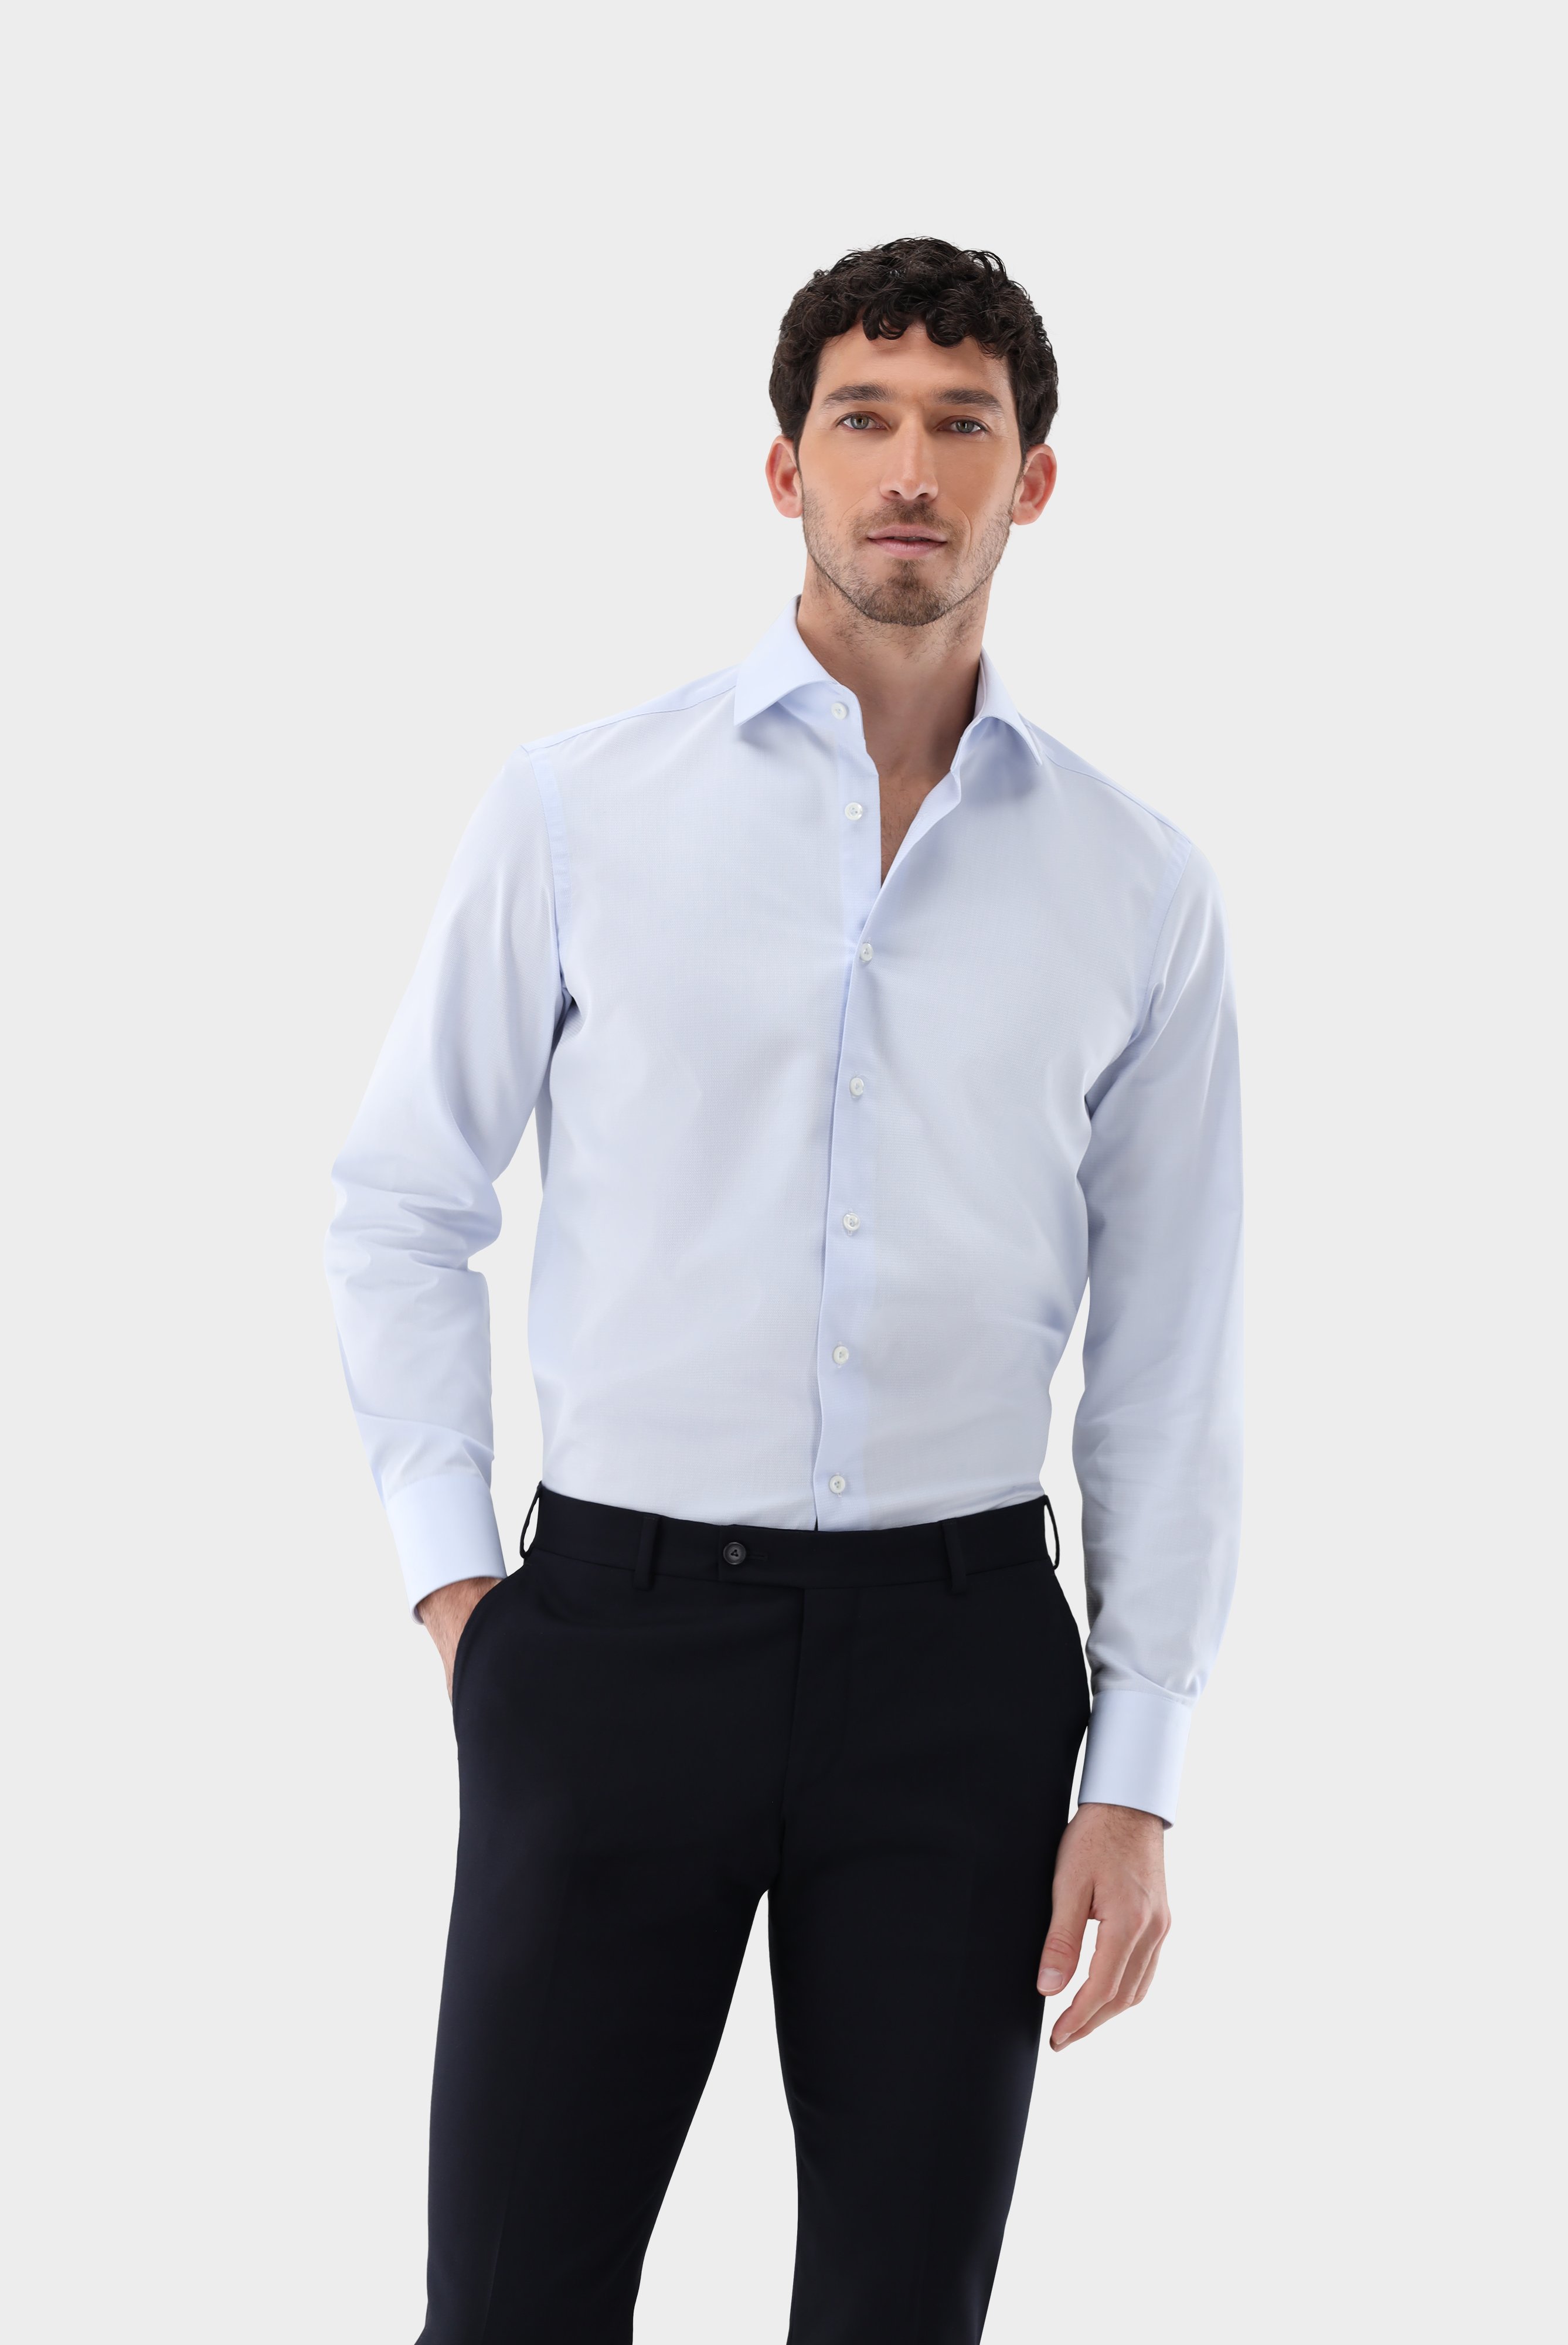 Bügelleichte Hemden+Bügelfreies Twil Hemd mit Struktur Tailor Fit+20.2020.BQ.150301.720.39